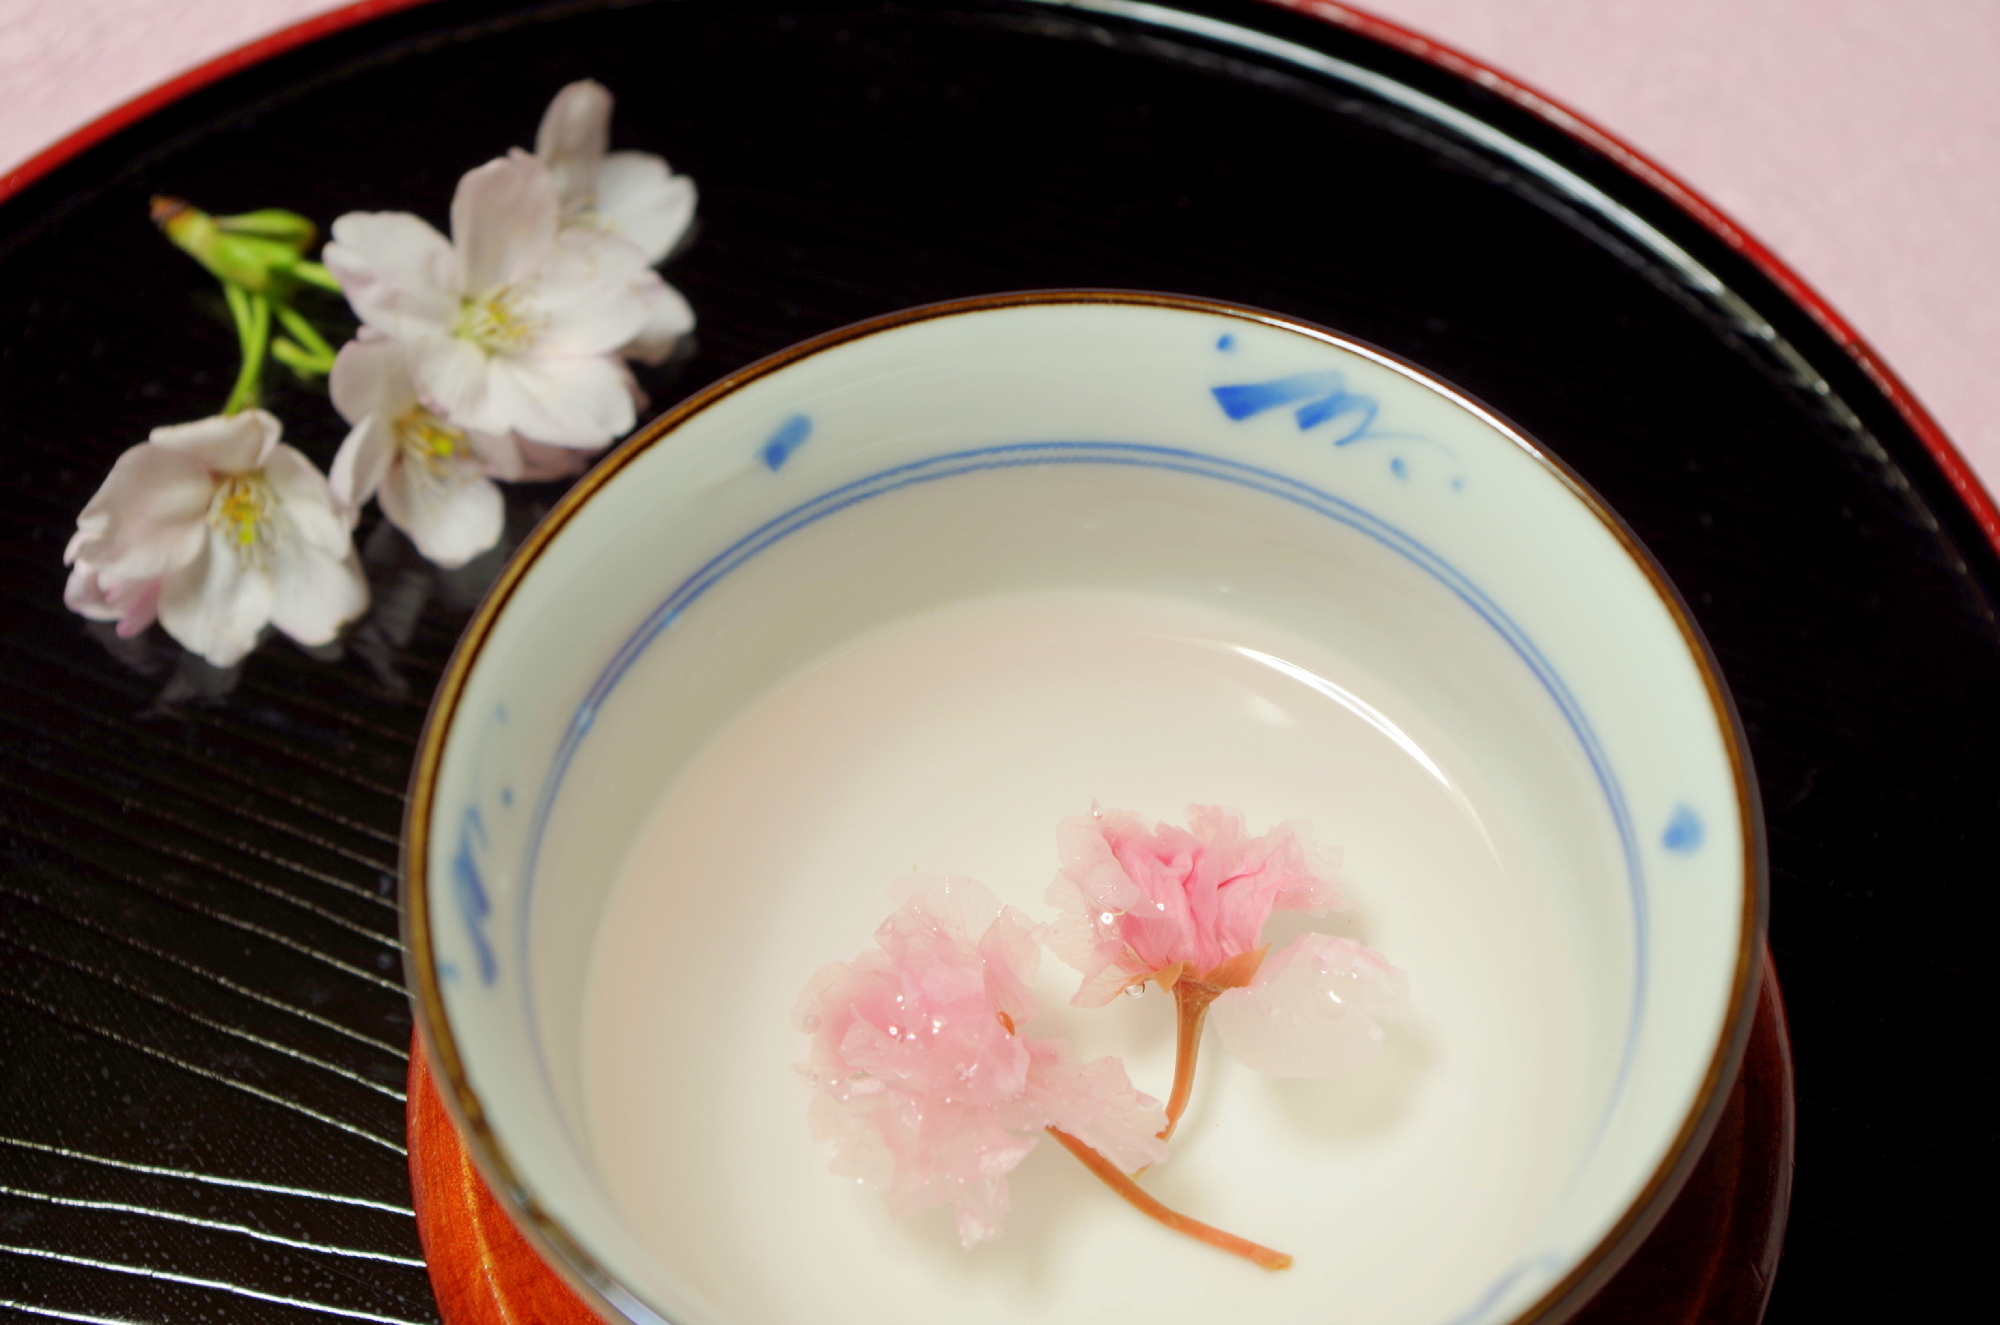 大人の教養6 結婚式 桜湯について 桜の花を塩漬けにして 御白湯を入れたもの マナー講師 石田宙子 マイベストプロ大阪